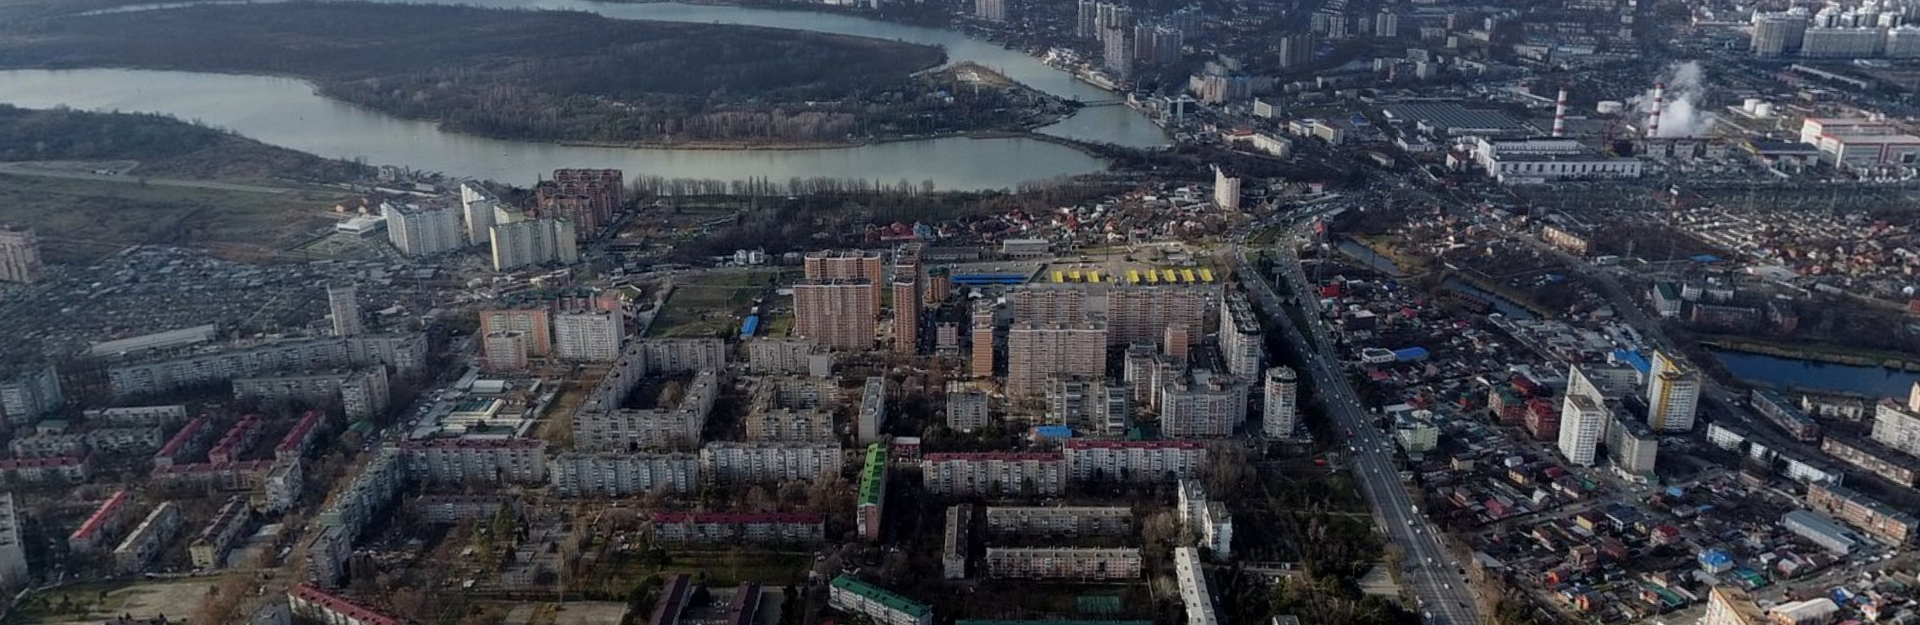 A district of Krasnodar where Legkodymov used to live (Yandex.ru)